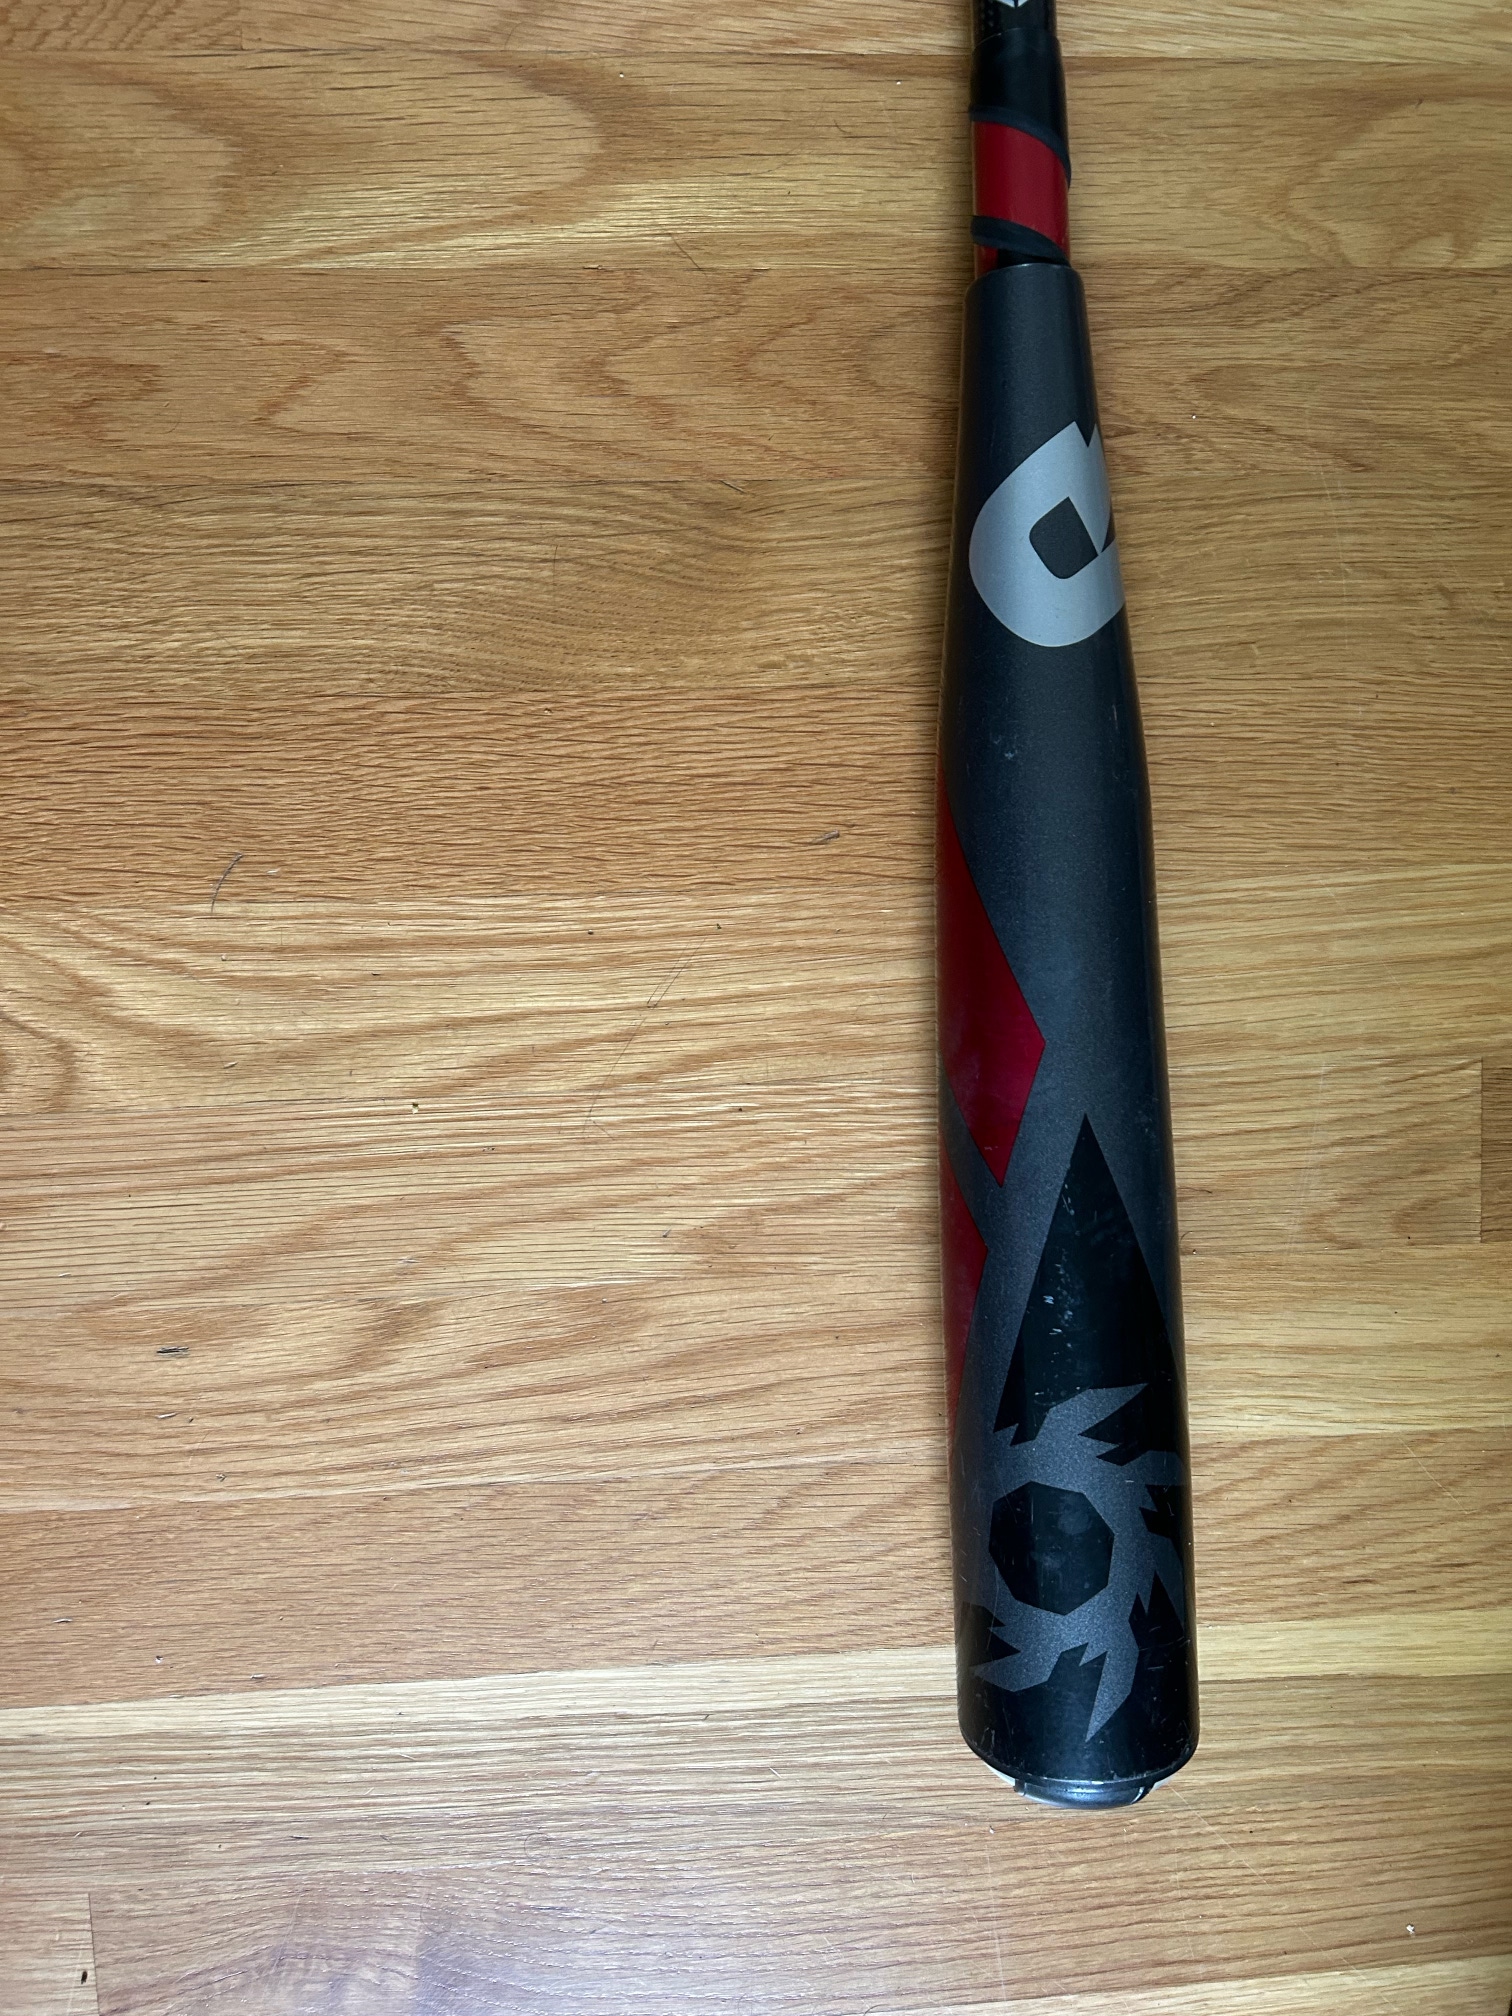 Used DeMarini Voodoo Balanced Bat (-3) 30 oz 33"